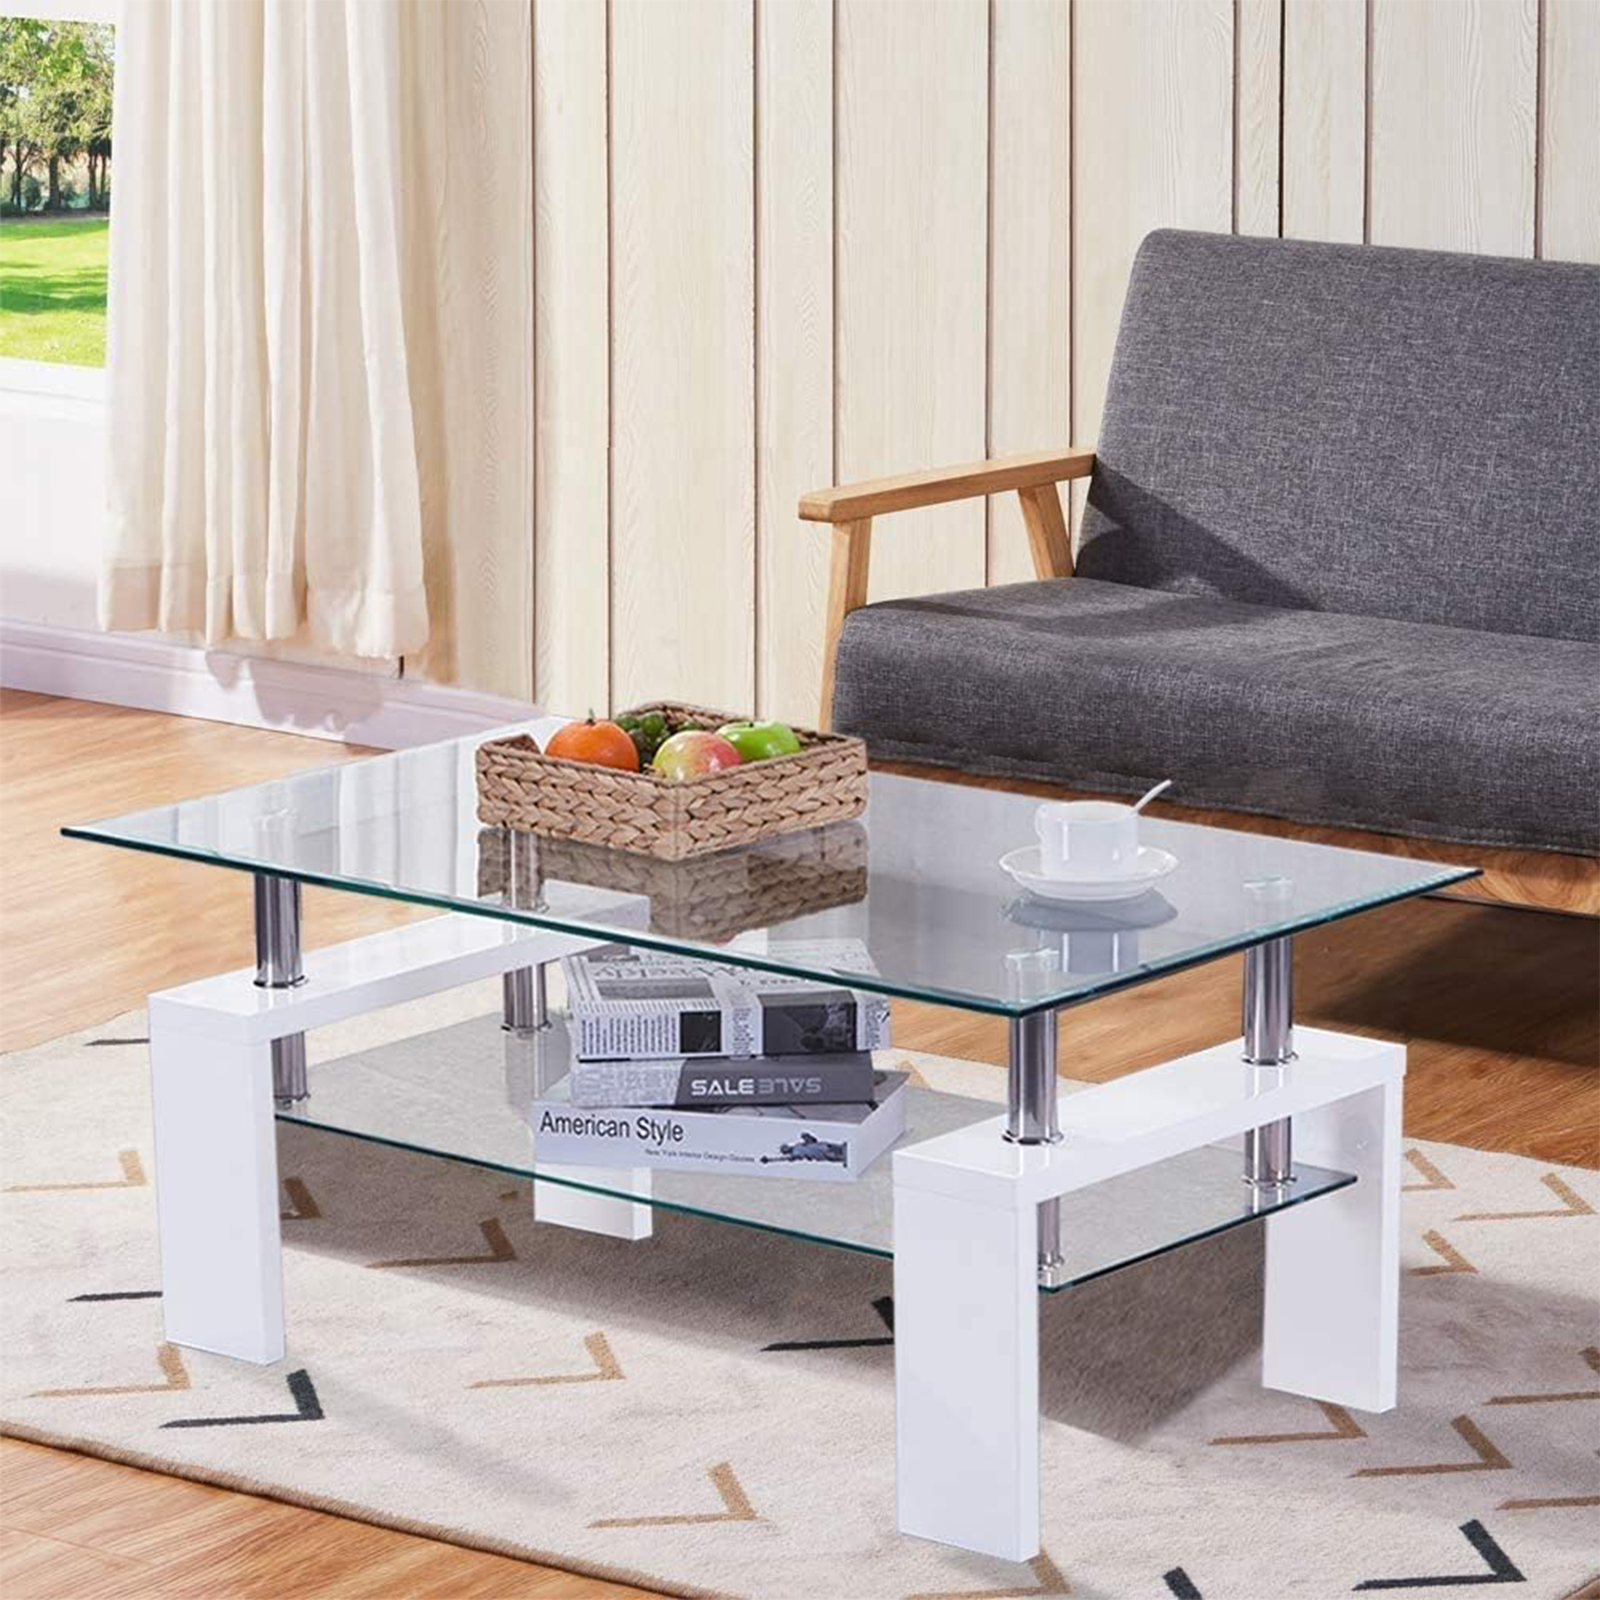 Table basse de salon en bois avec étagère en verre 100x60 cm 45h